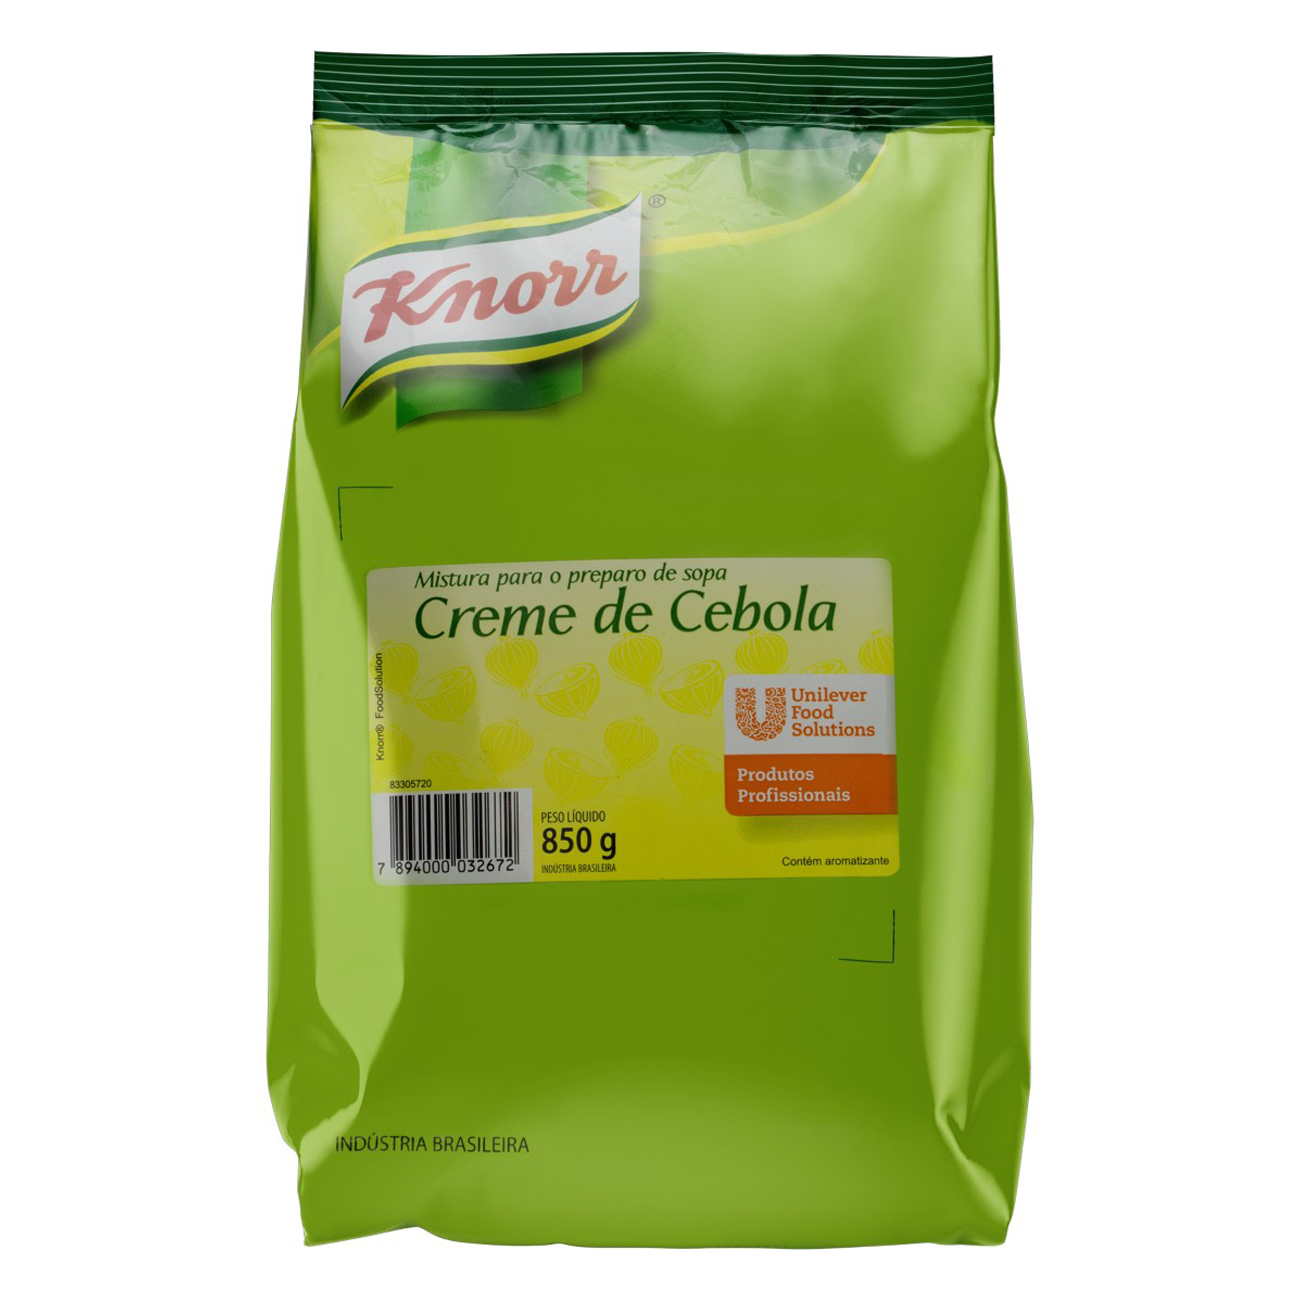 Creme de Cebola Knorr Pacote 850g